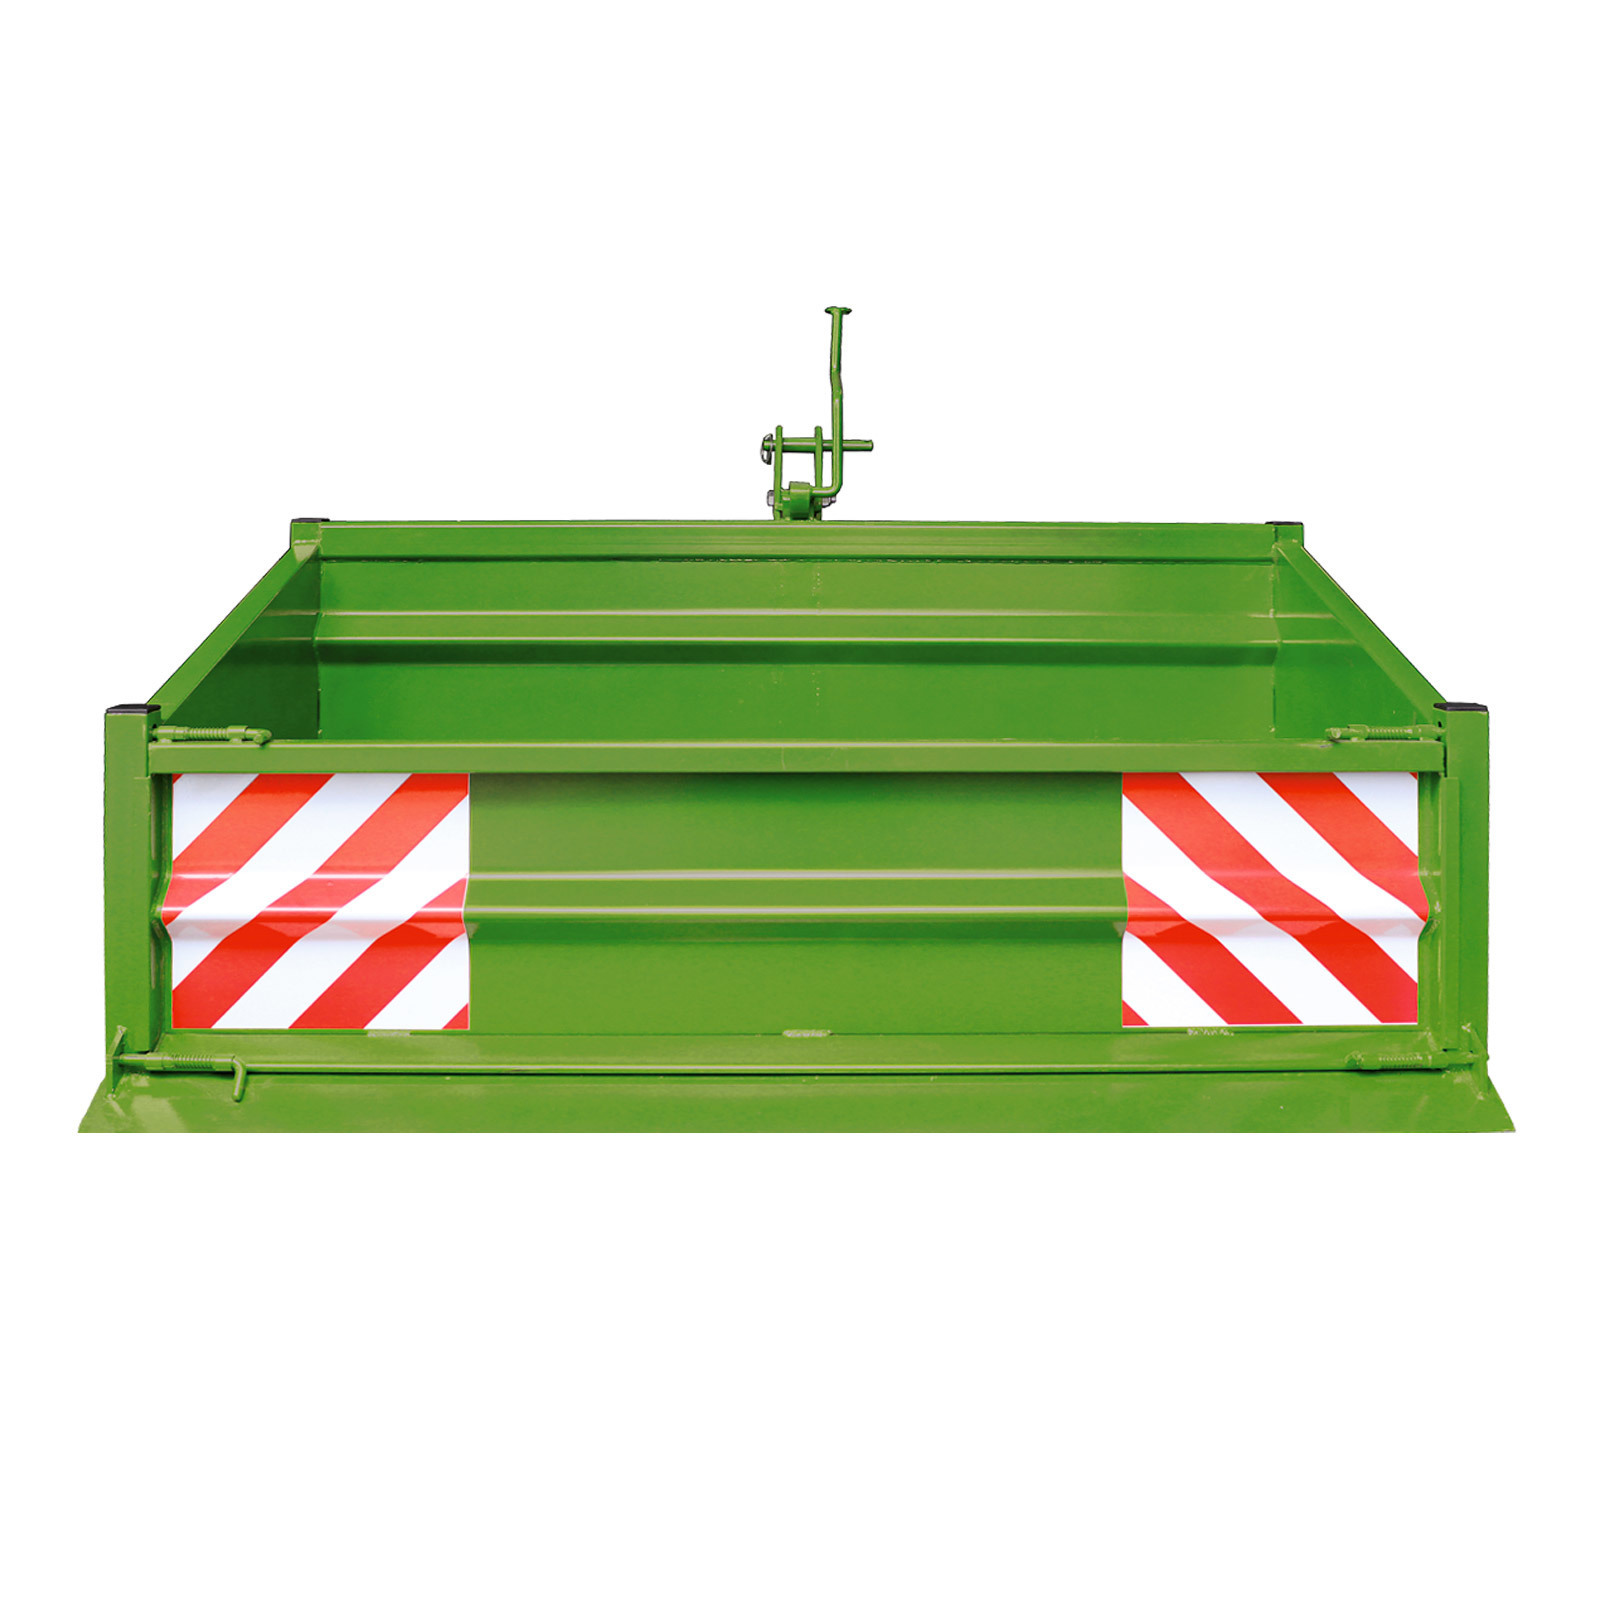 Dema Heckcontainer / Heckmulde 1500 S / K1-grün aus Stahl